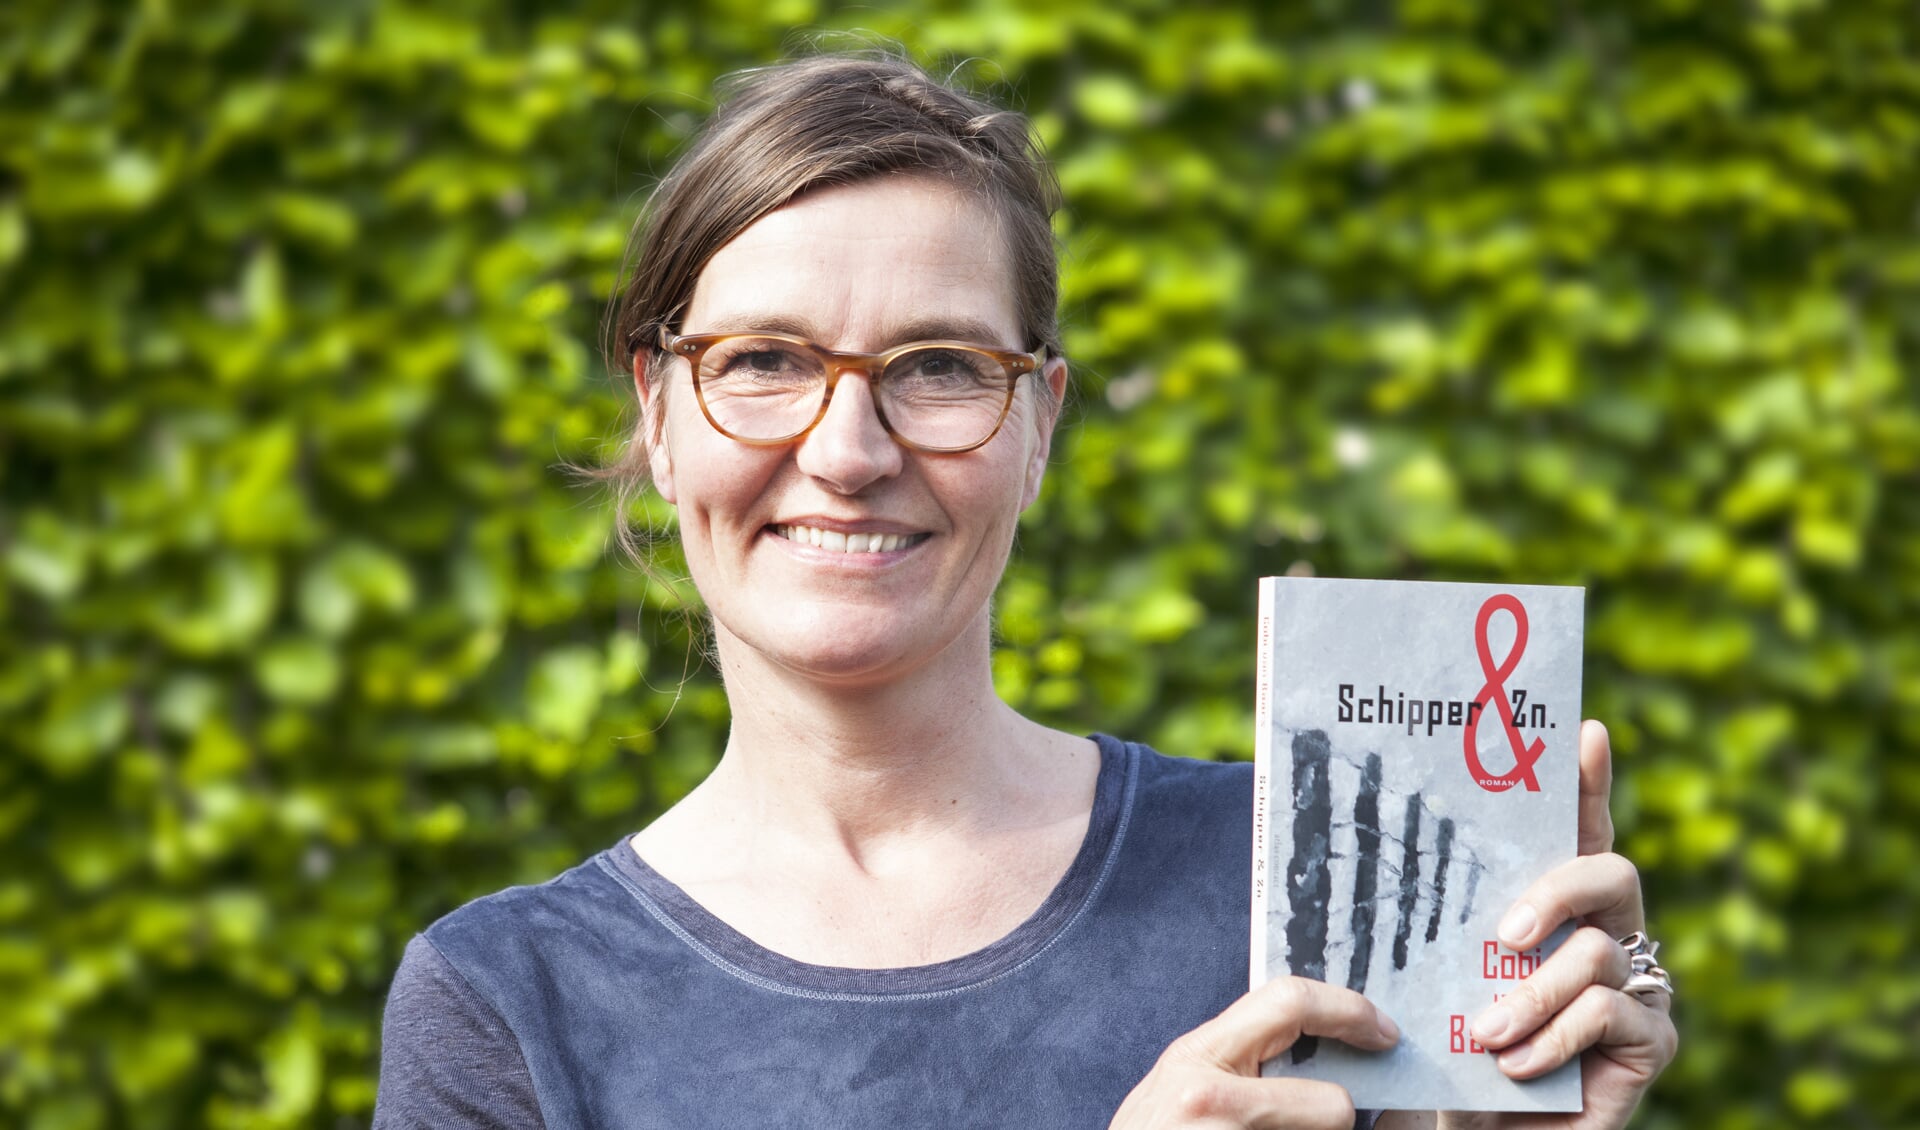 De Cuijkse schrijfster Cobi van Baars zag onlangs haar debuutroman 'Schipper & Zn.' uitgebracht worden. 